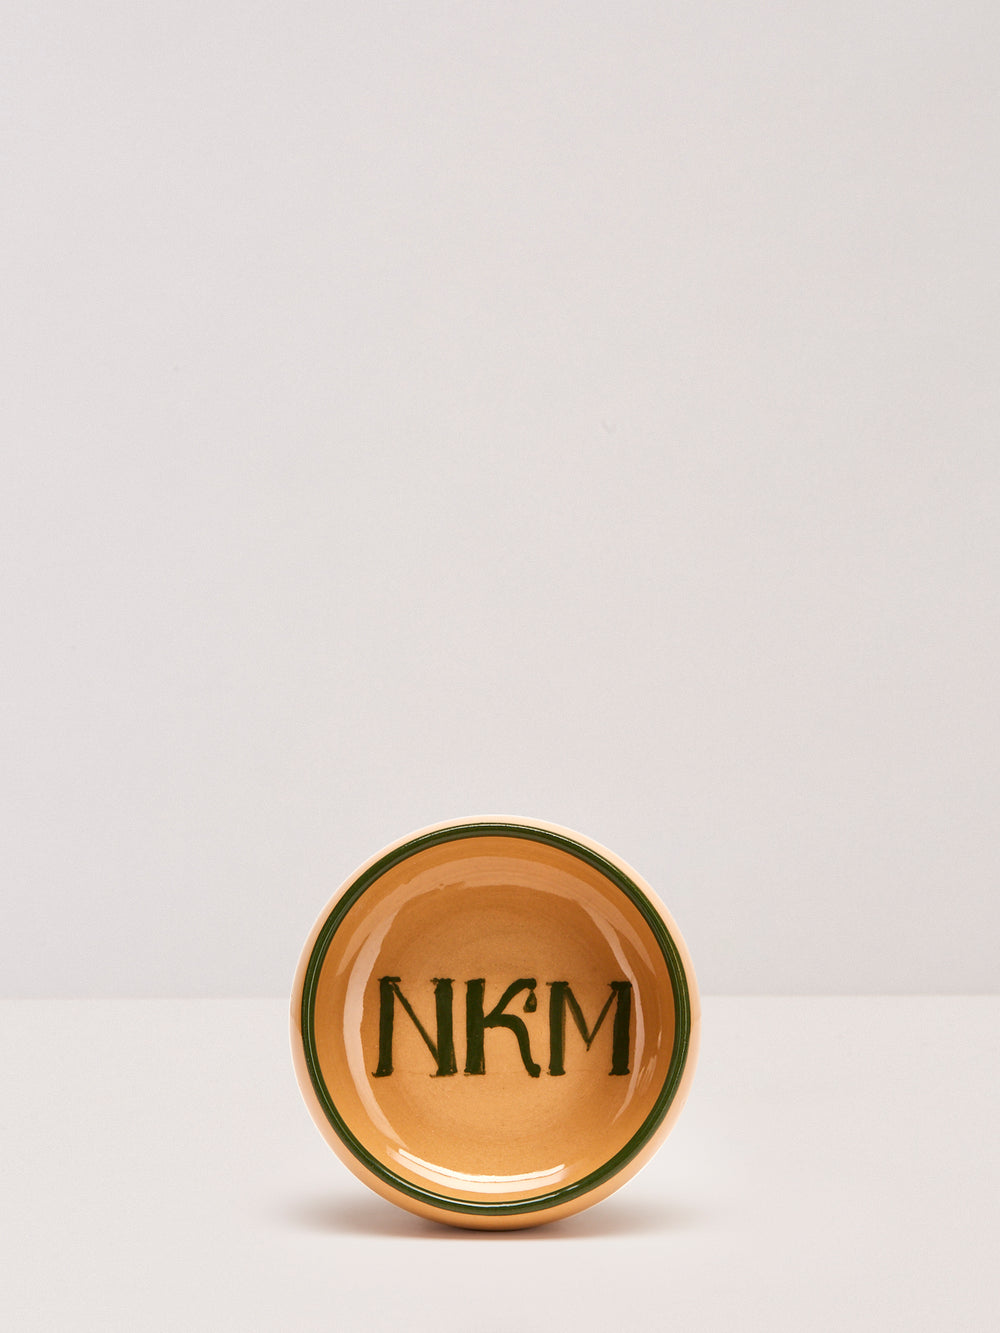 Eine handgetöpferte Schale aus Watt von NKM Naturkosmetik München.